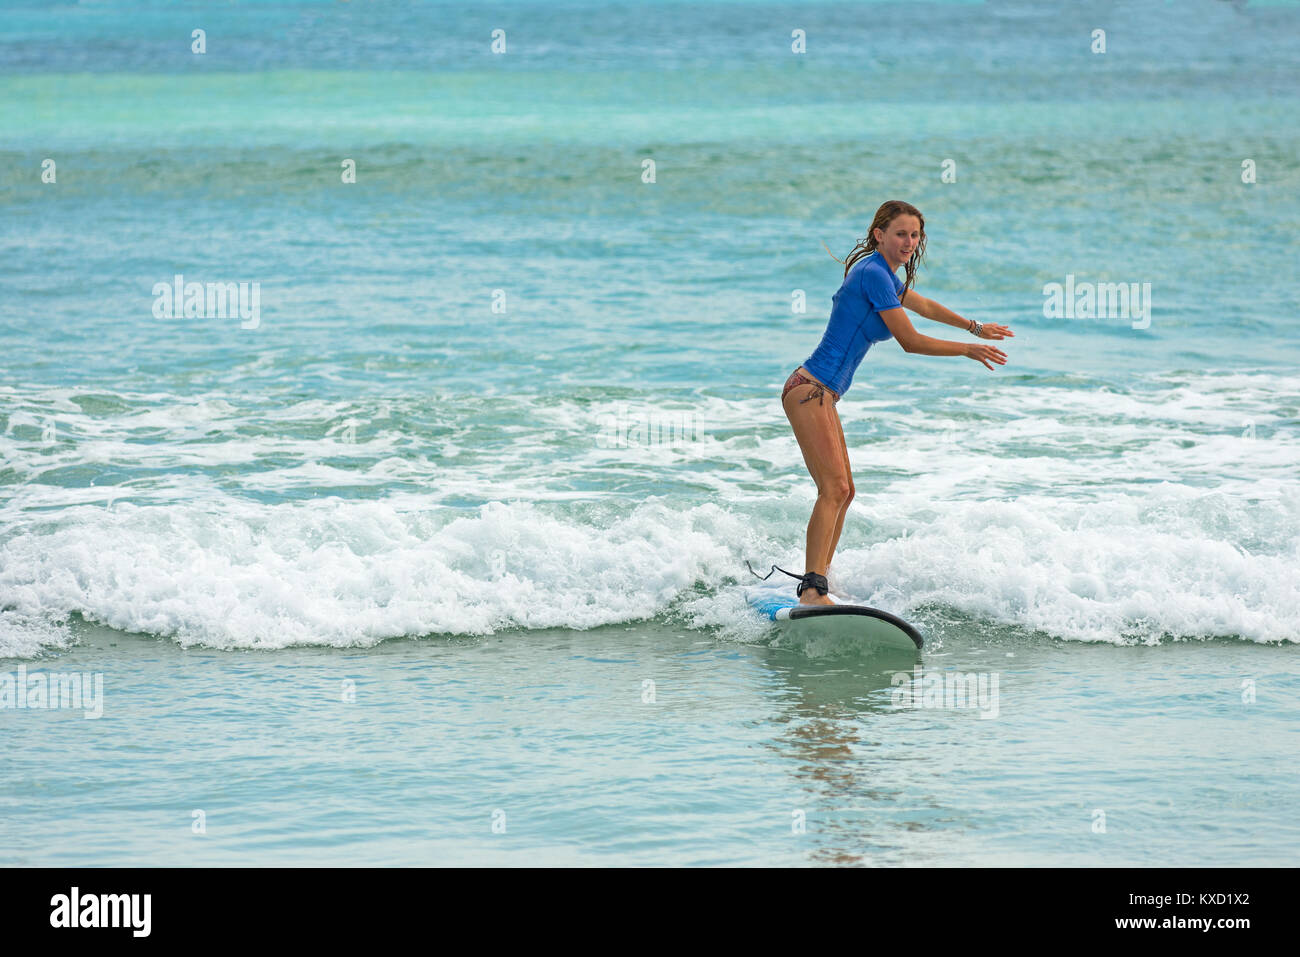 Jeune femme apprend à surfer sur un long board sur les vagues de l'apprenant dans un endroit paradisiaque. Banque D'Images